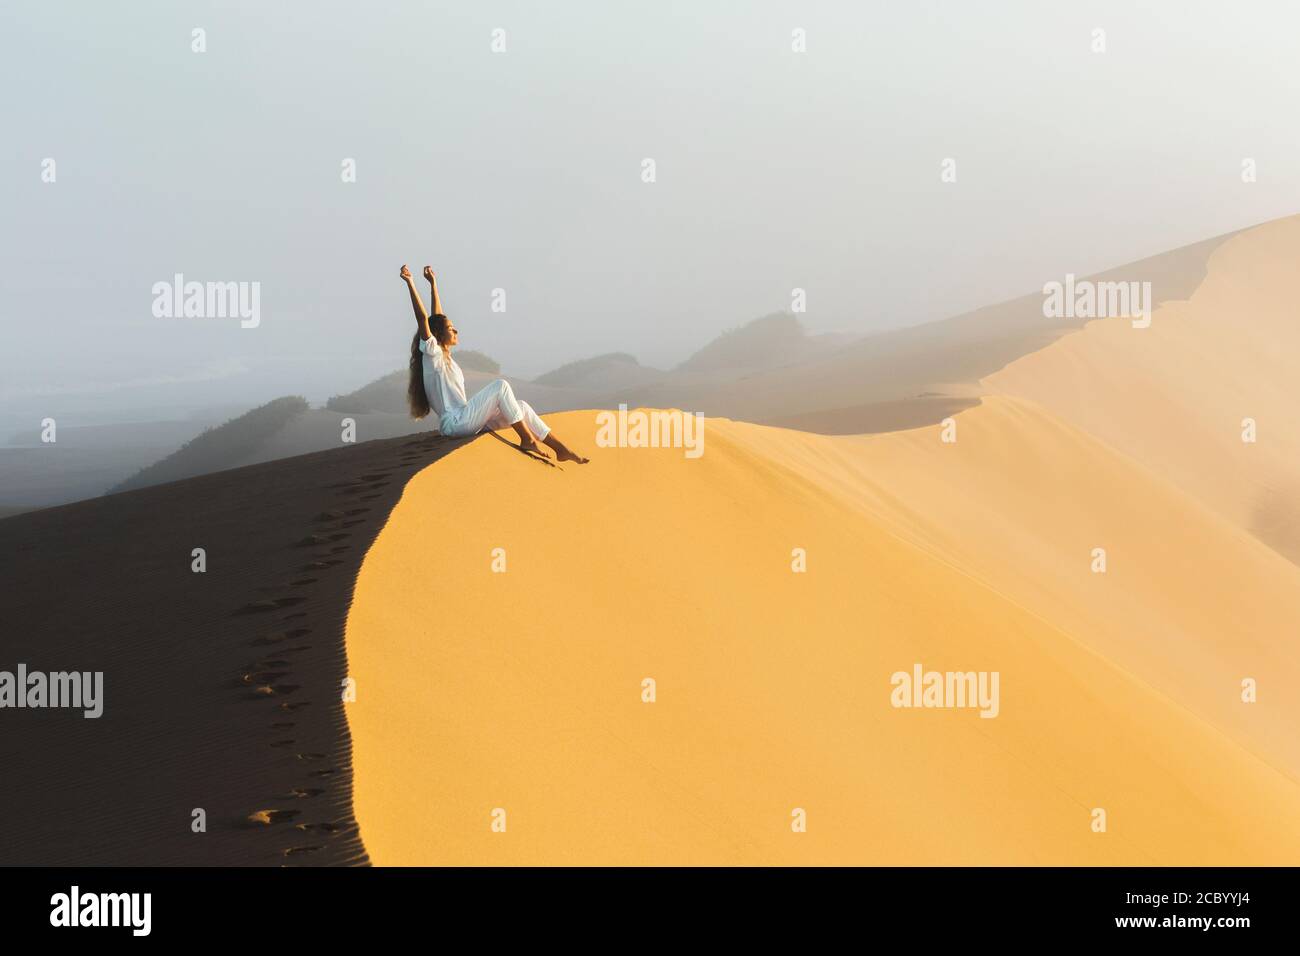 Traumziel, Reise- und Fernweh-Konzept. Glückliche Frau inspiriert von fantastischen Sonnenaufgang in Sahara Wüste Sanddünen, Marokko. Nebel am Morgen und warmes Licht. Stockfoto